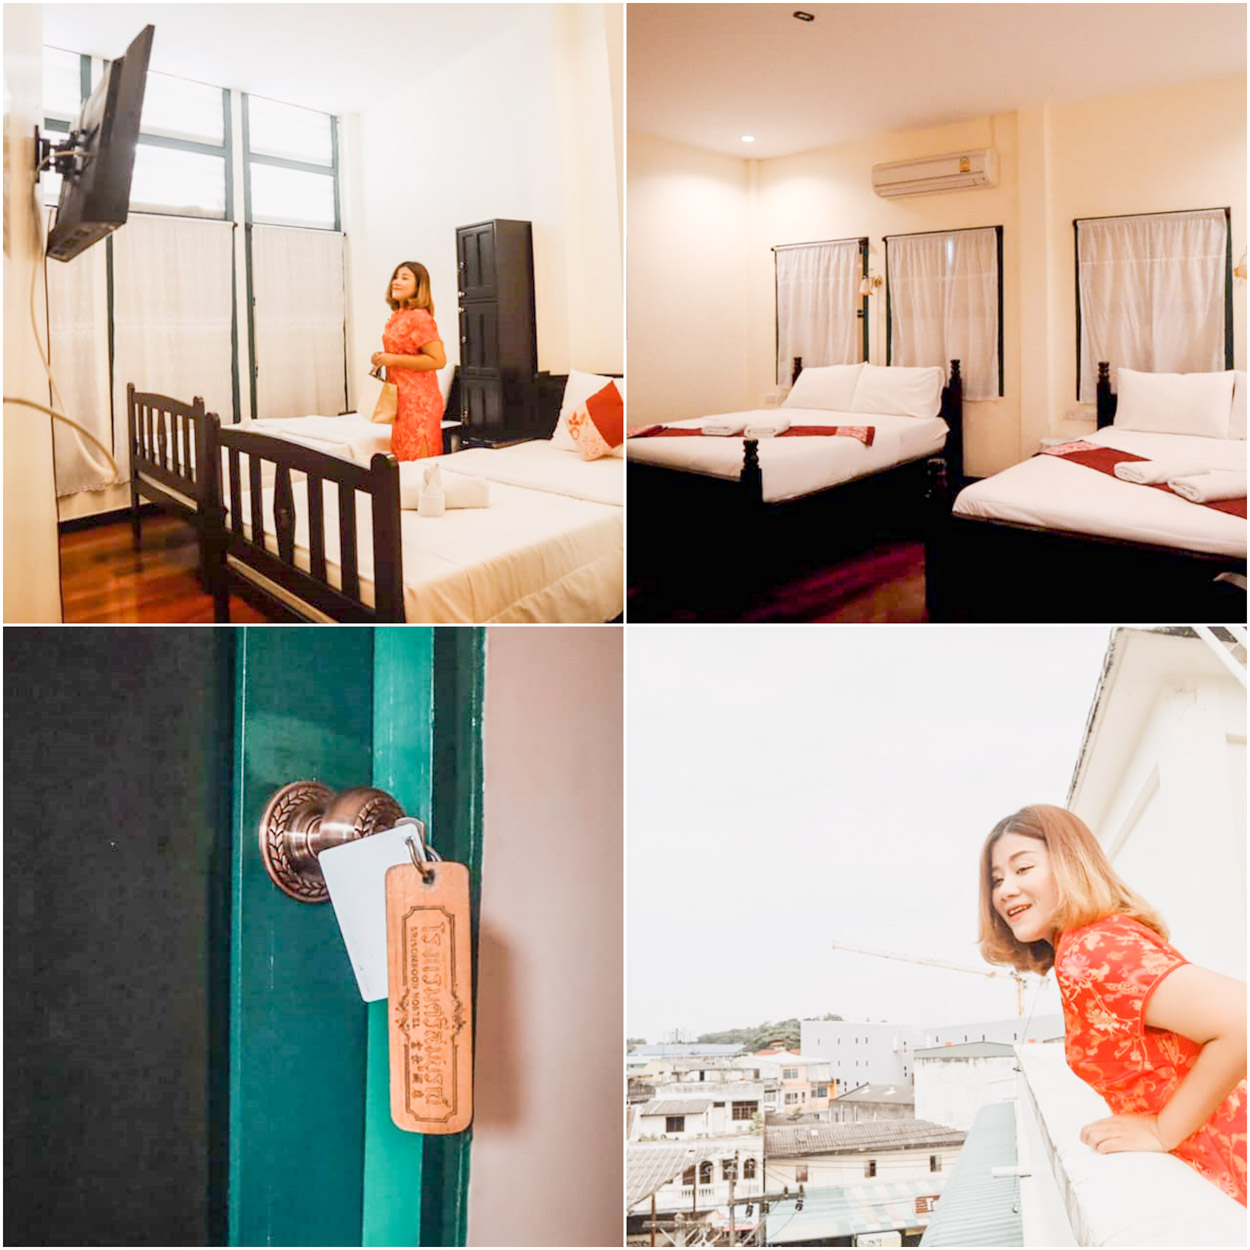 โรงแรมศรีสมบูรณ์ Srisomboon Hostel ที่พักตรังในตัวเมืองใกล้หอนาฬิกาตรังเดินทางง่ายสะดวกสบายต้องห้ามพลาด